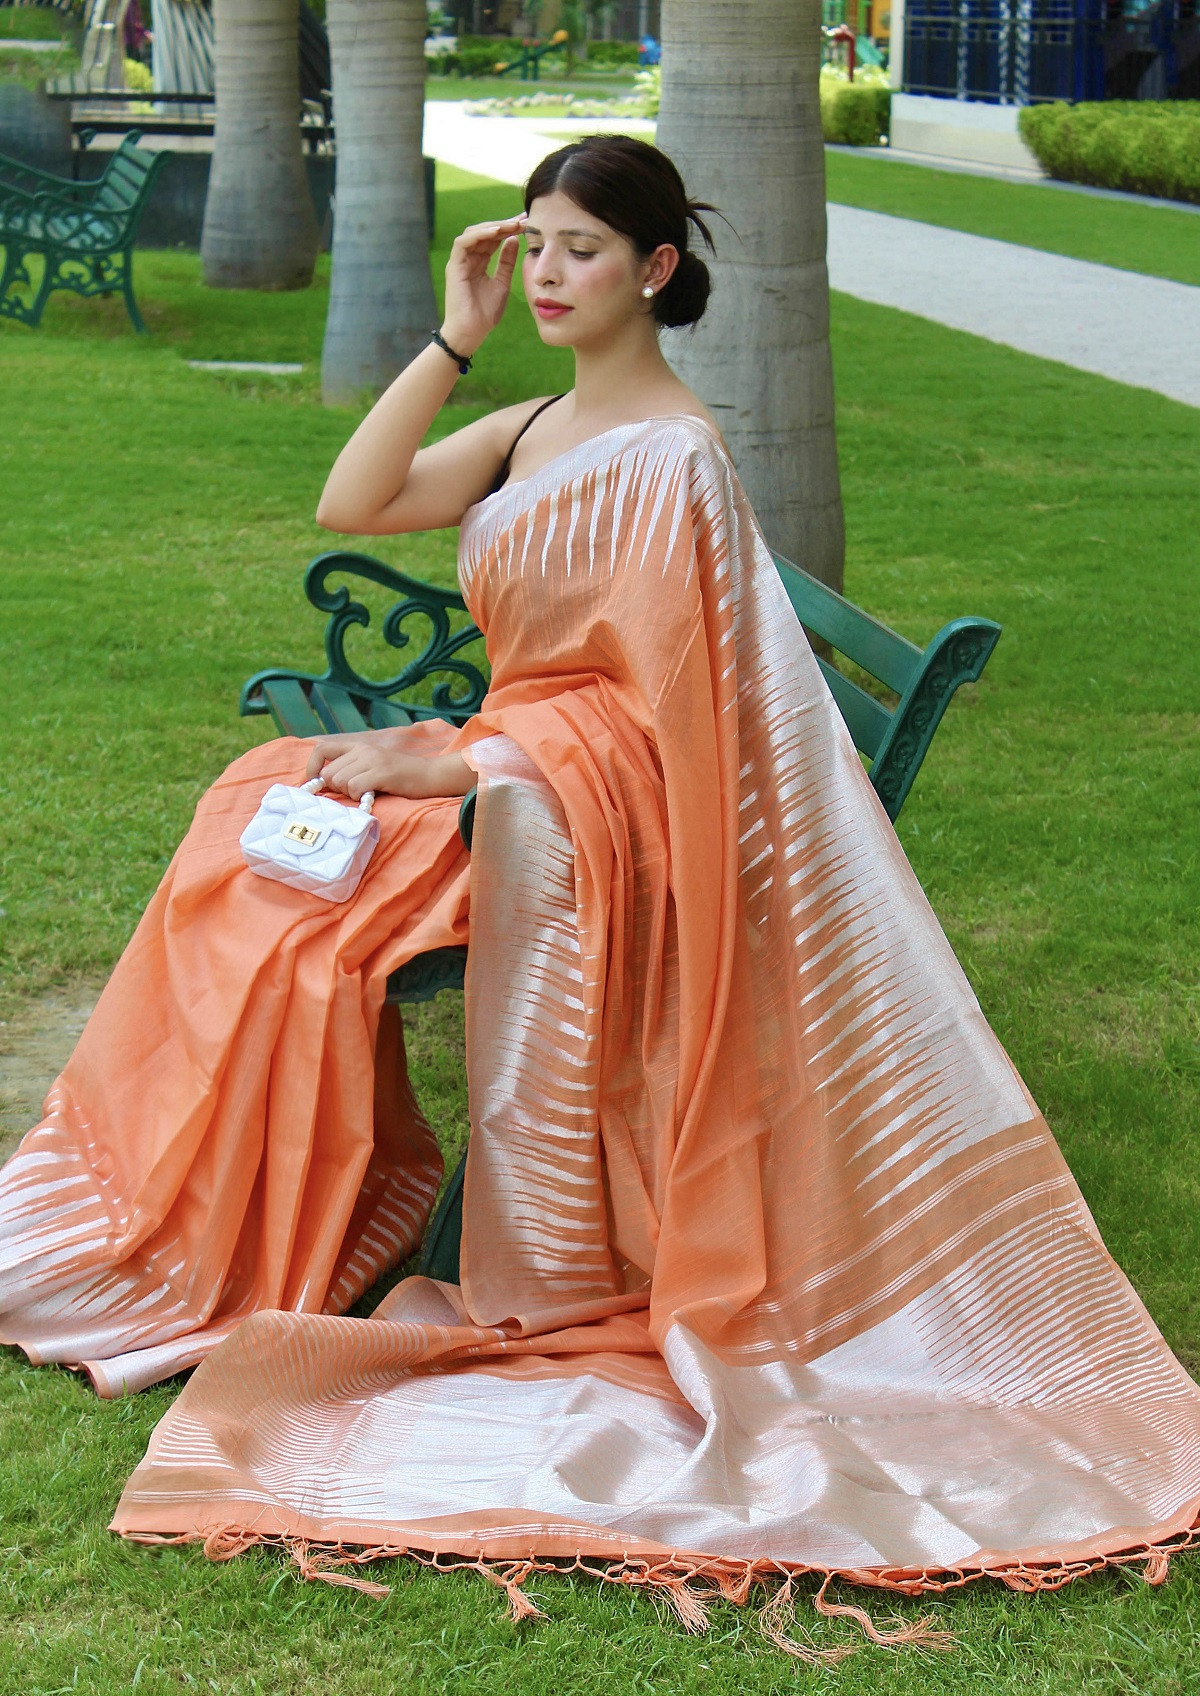 Pure Cotton Saree with Copper Zari woven motif and Pallu - Peach